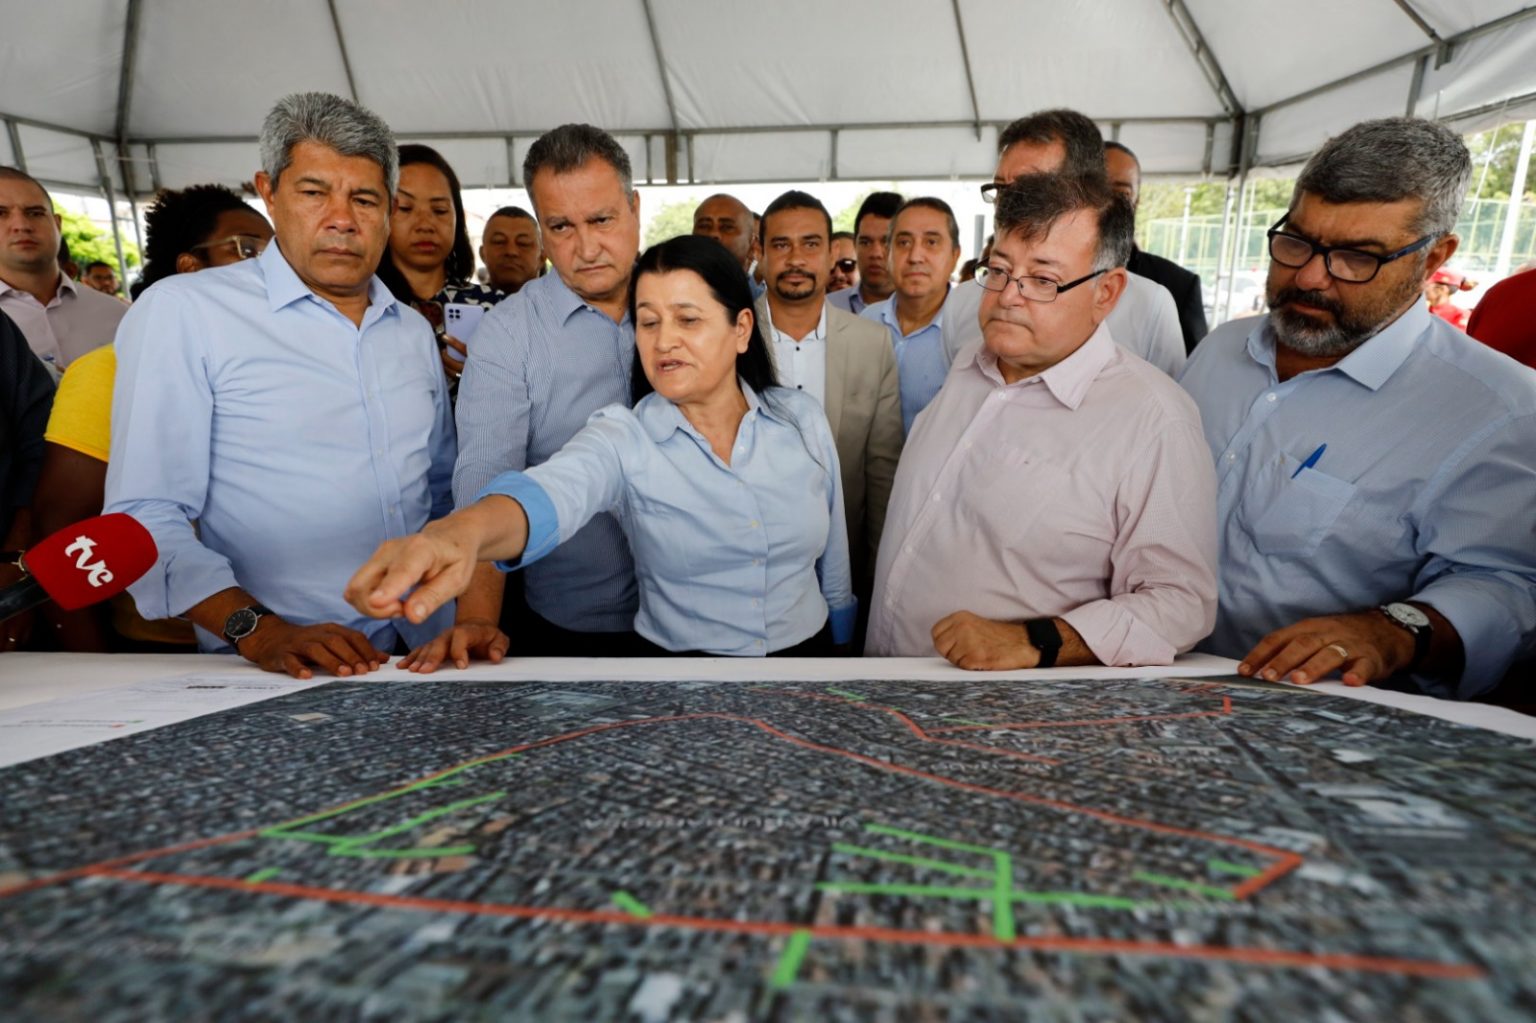 Ao lado de ministro, governador anuncia licitação para obras do Novo PAC na cidade Baixa, em Salvador